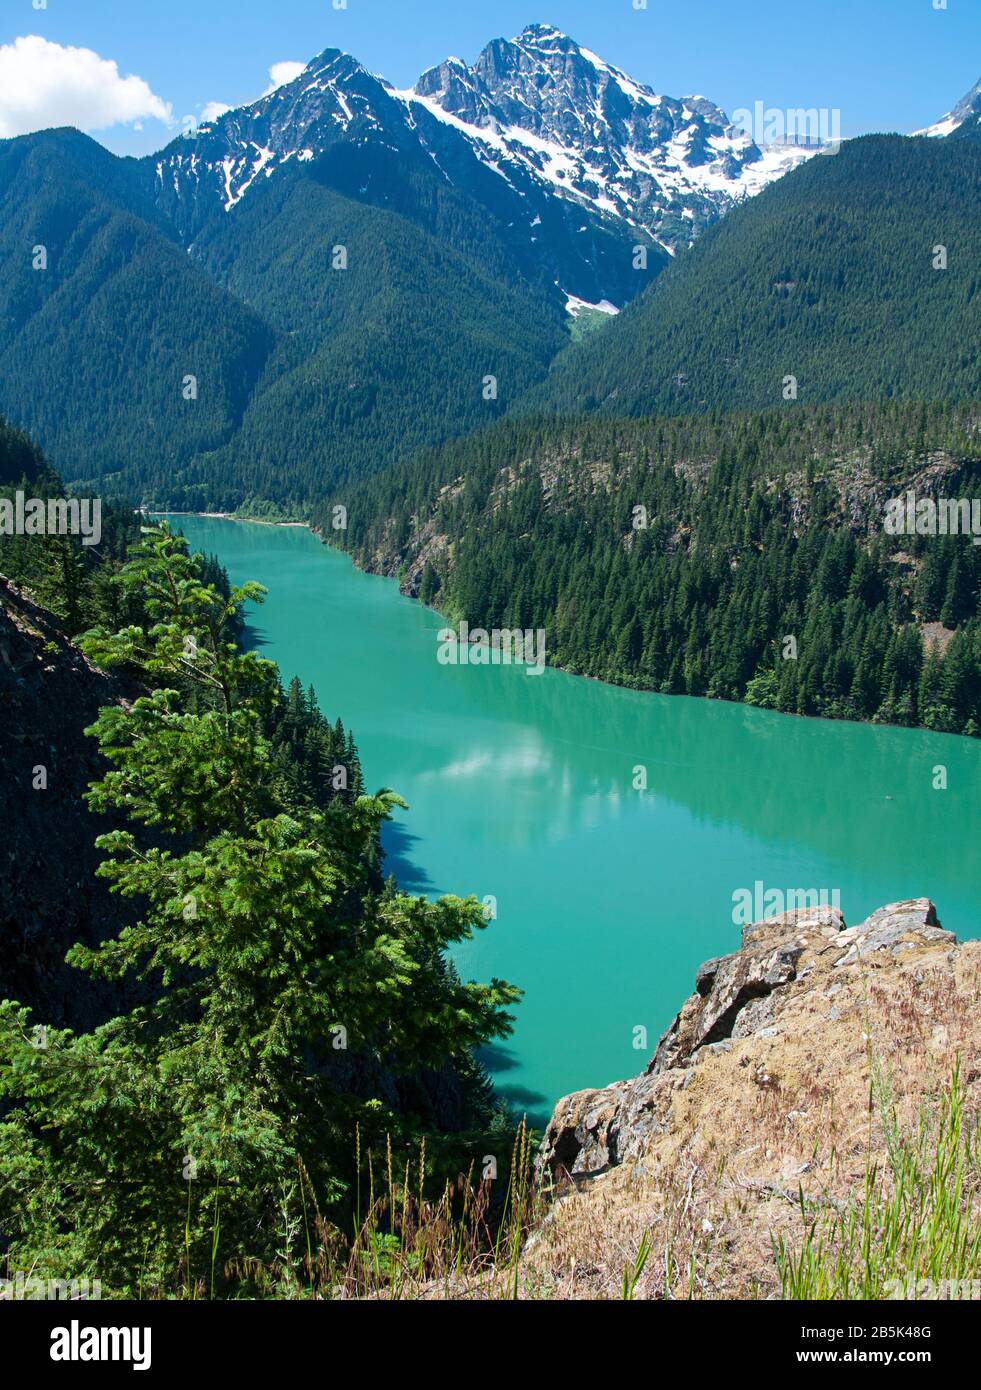 Landschaft des Ross Lake Washington, atemberaubende Natur dieses Pazifischen Nordwest-Sees mit tiefgrünem Wasser und schneebedeckten Bergen. Stockfoto